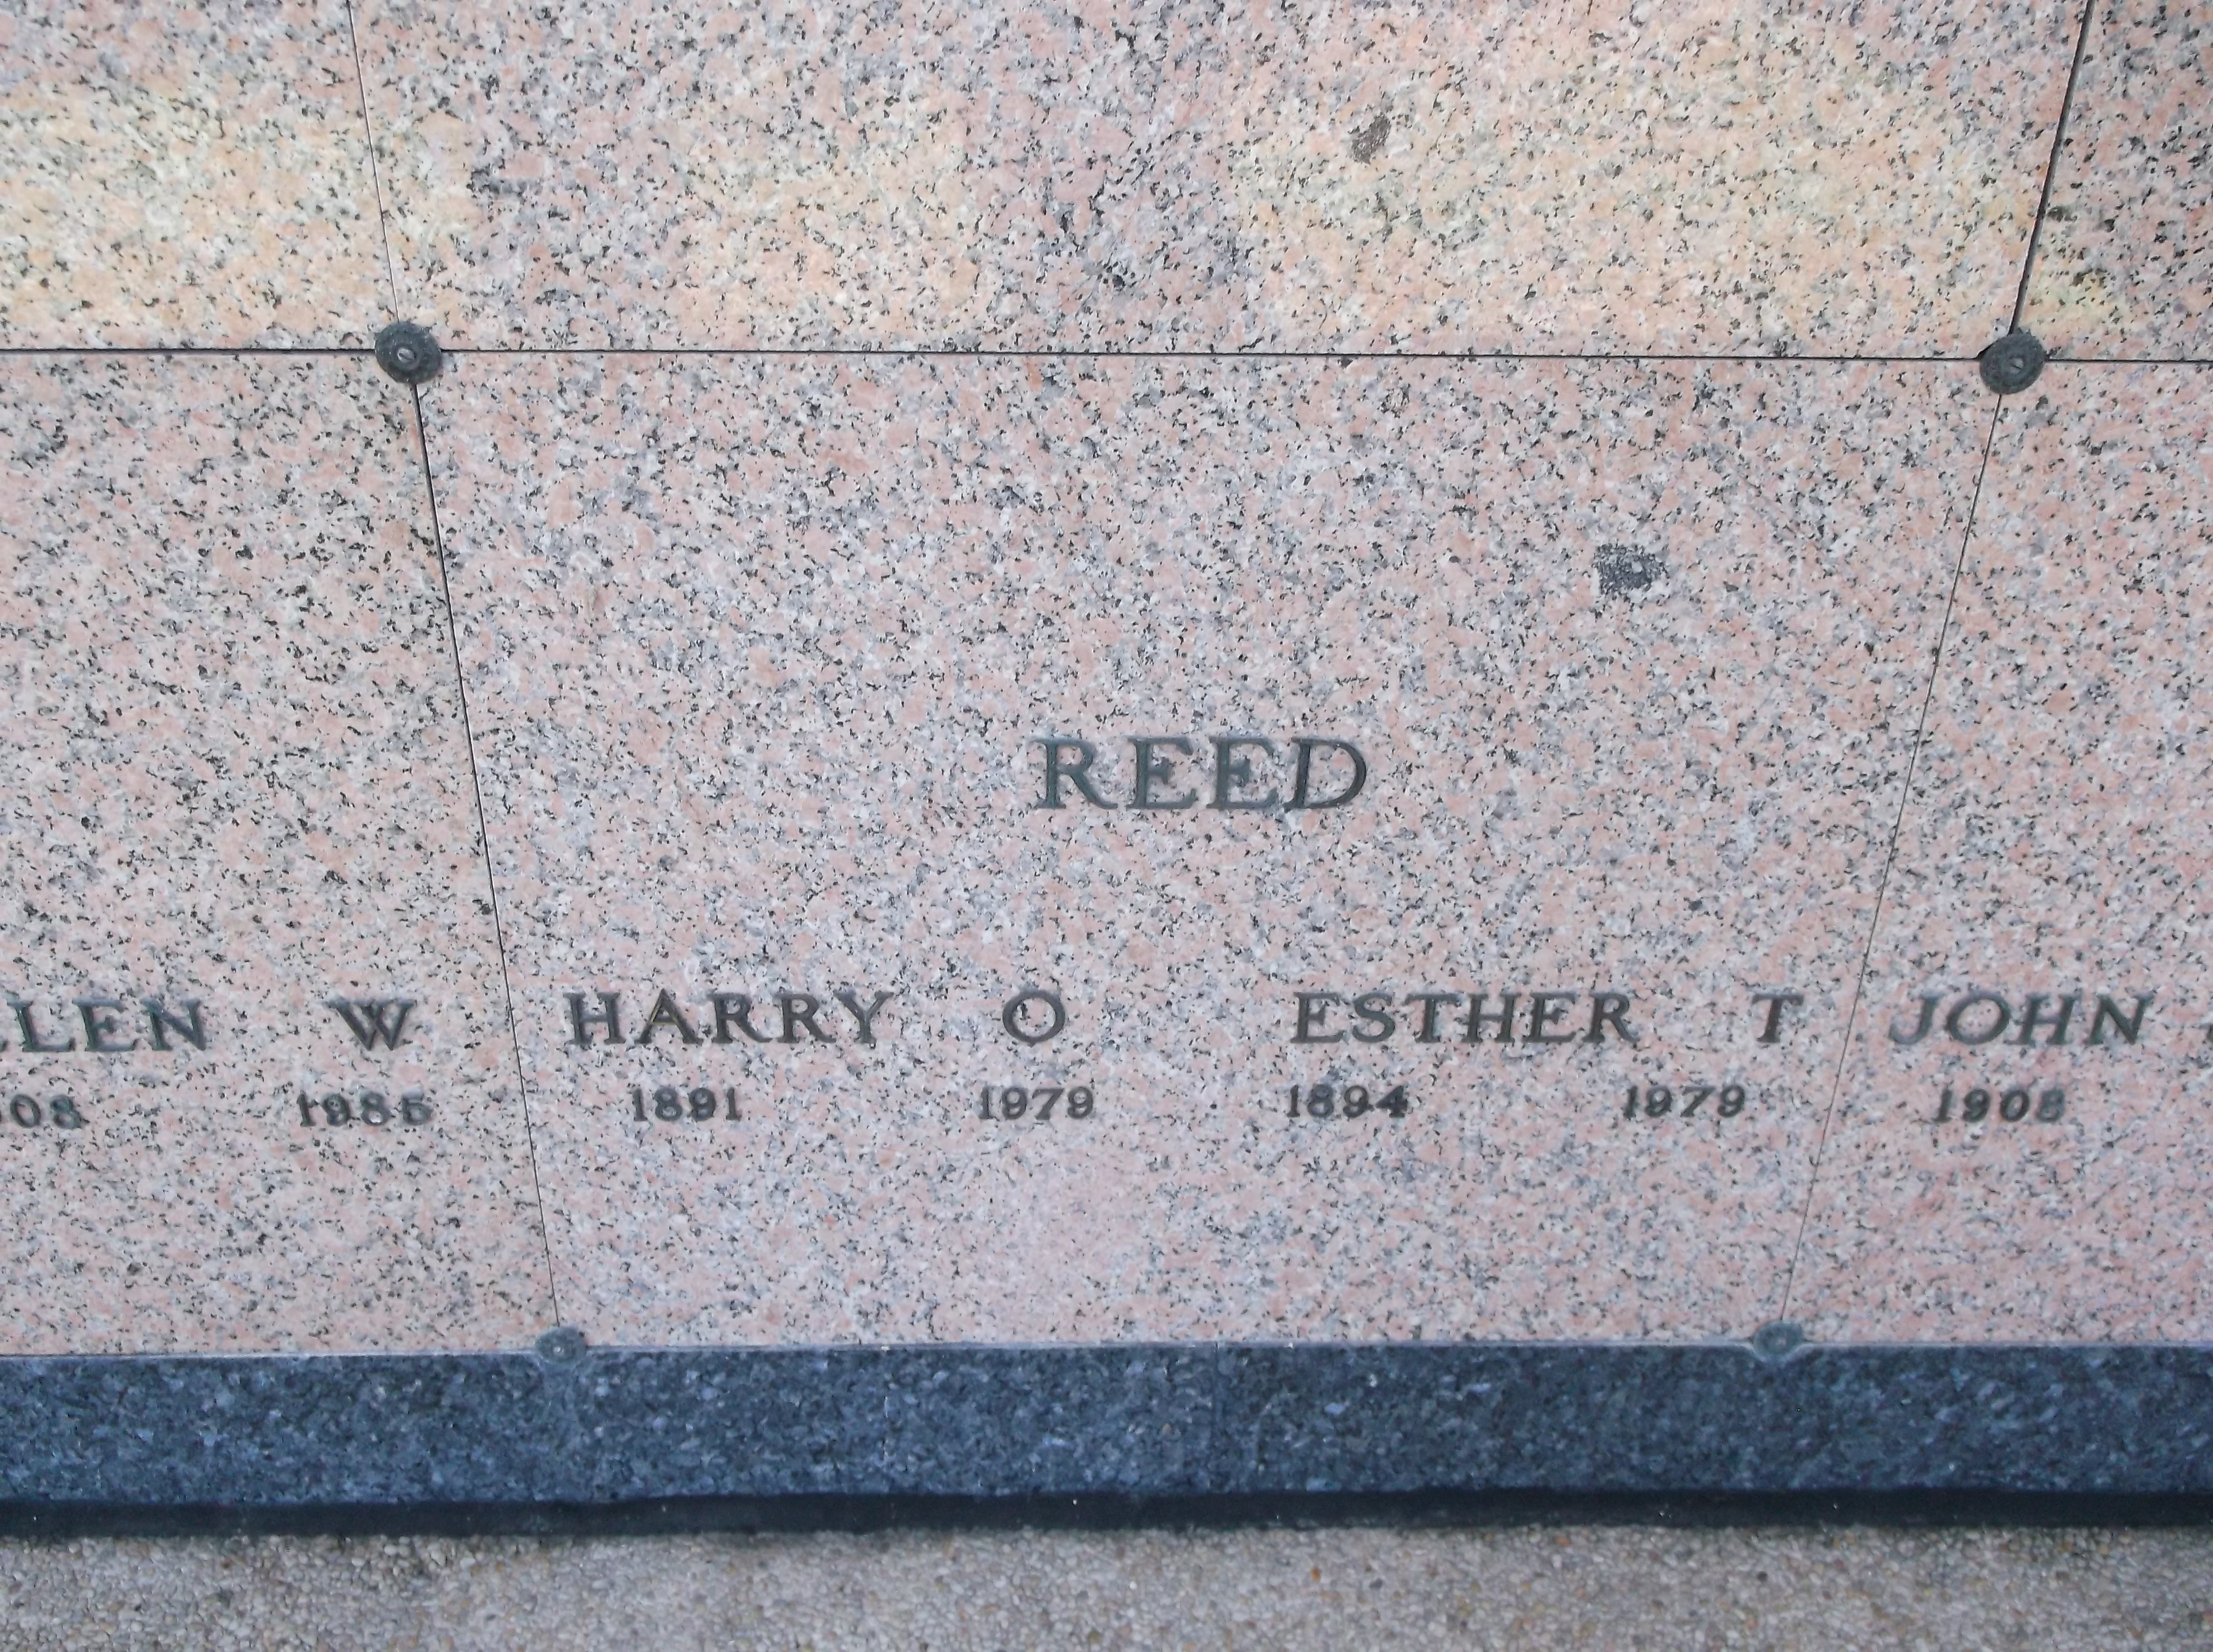 Harry O Reed